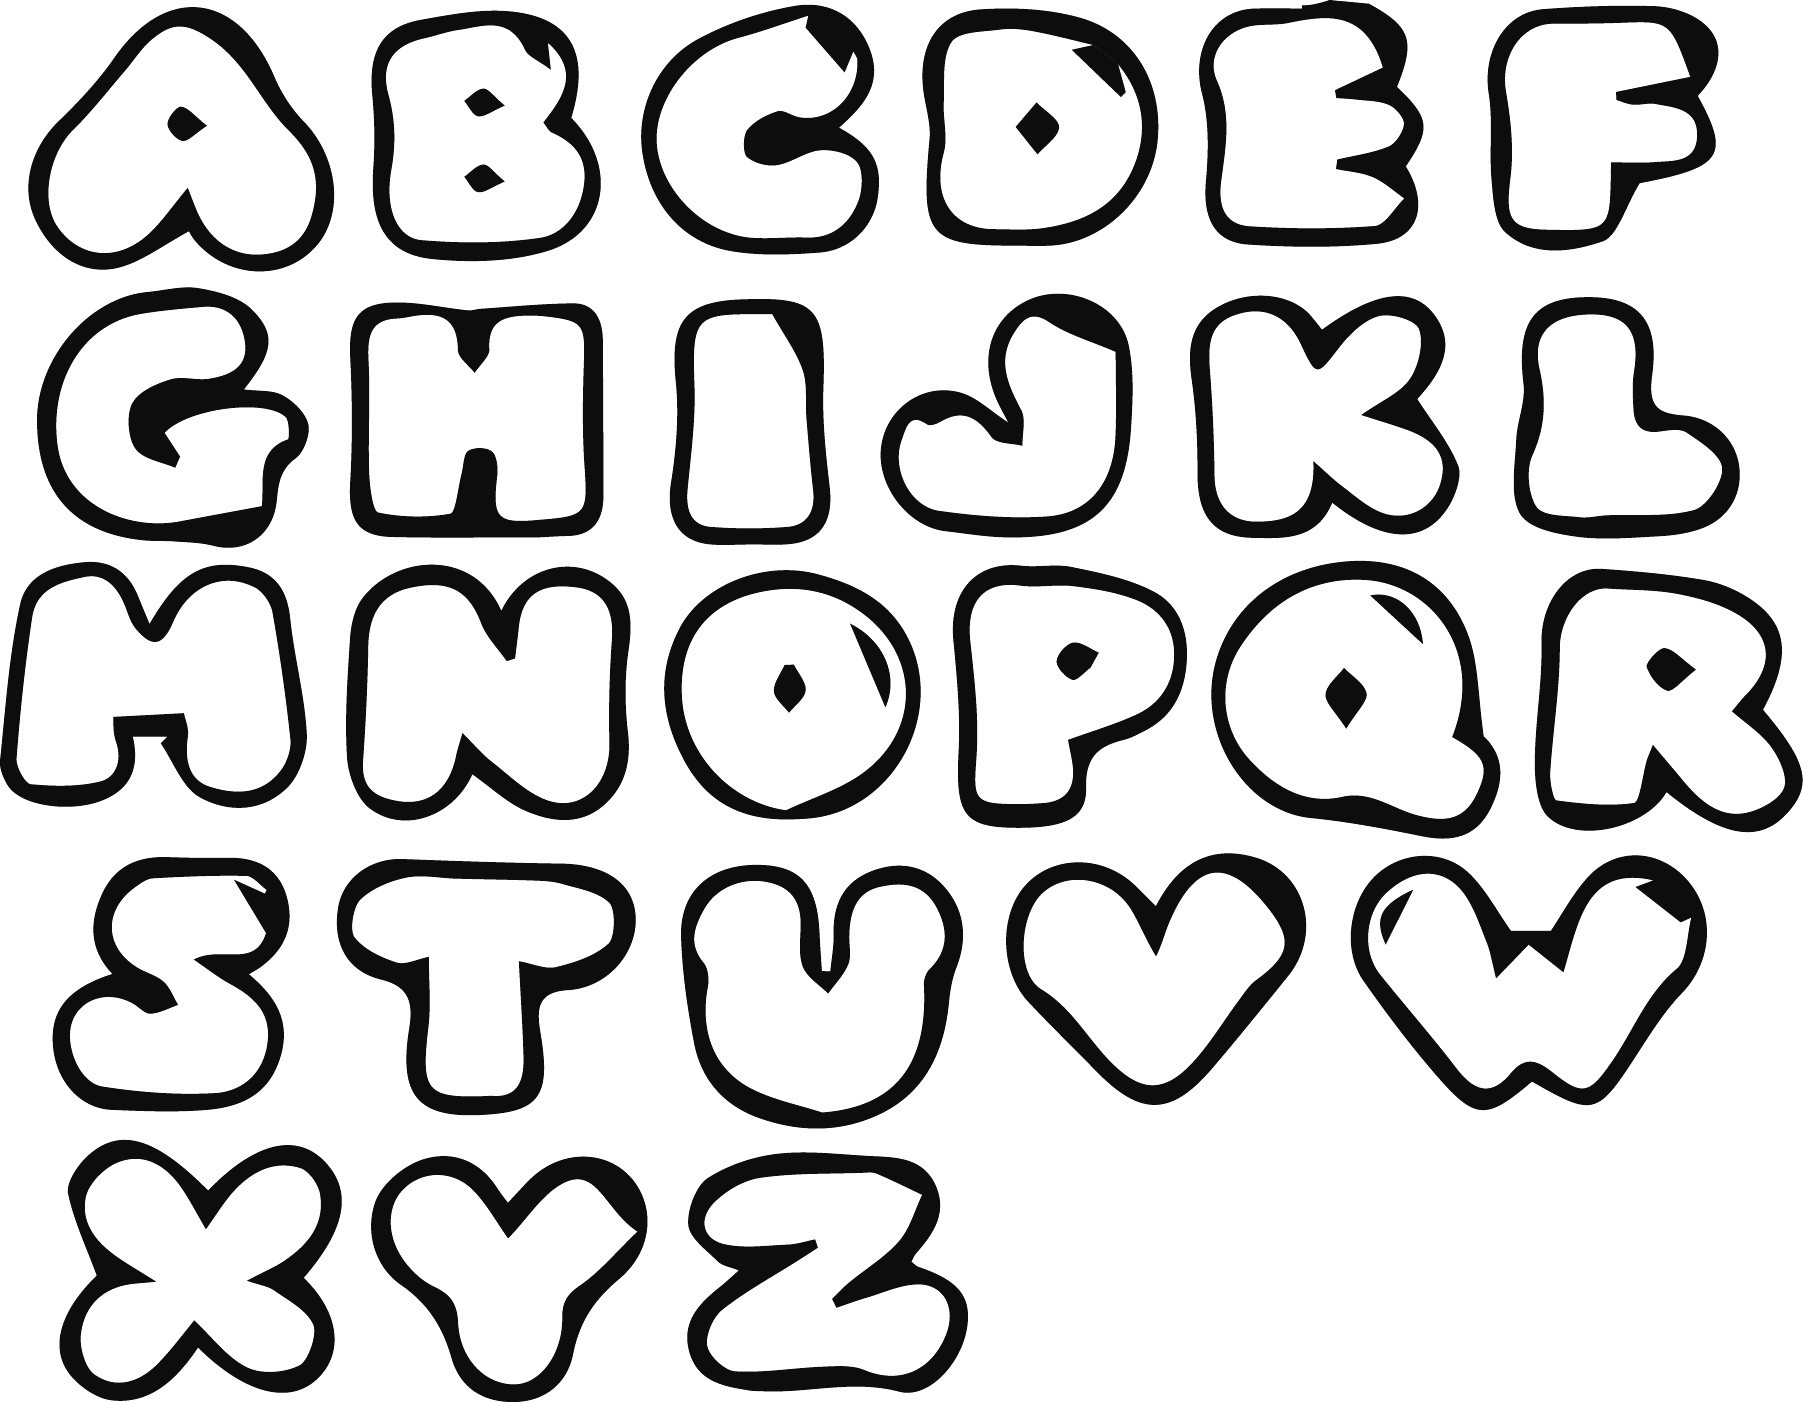 Bubble letters alphabet.